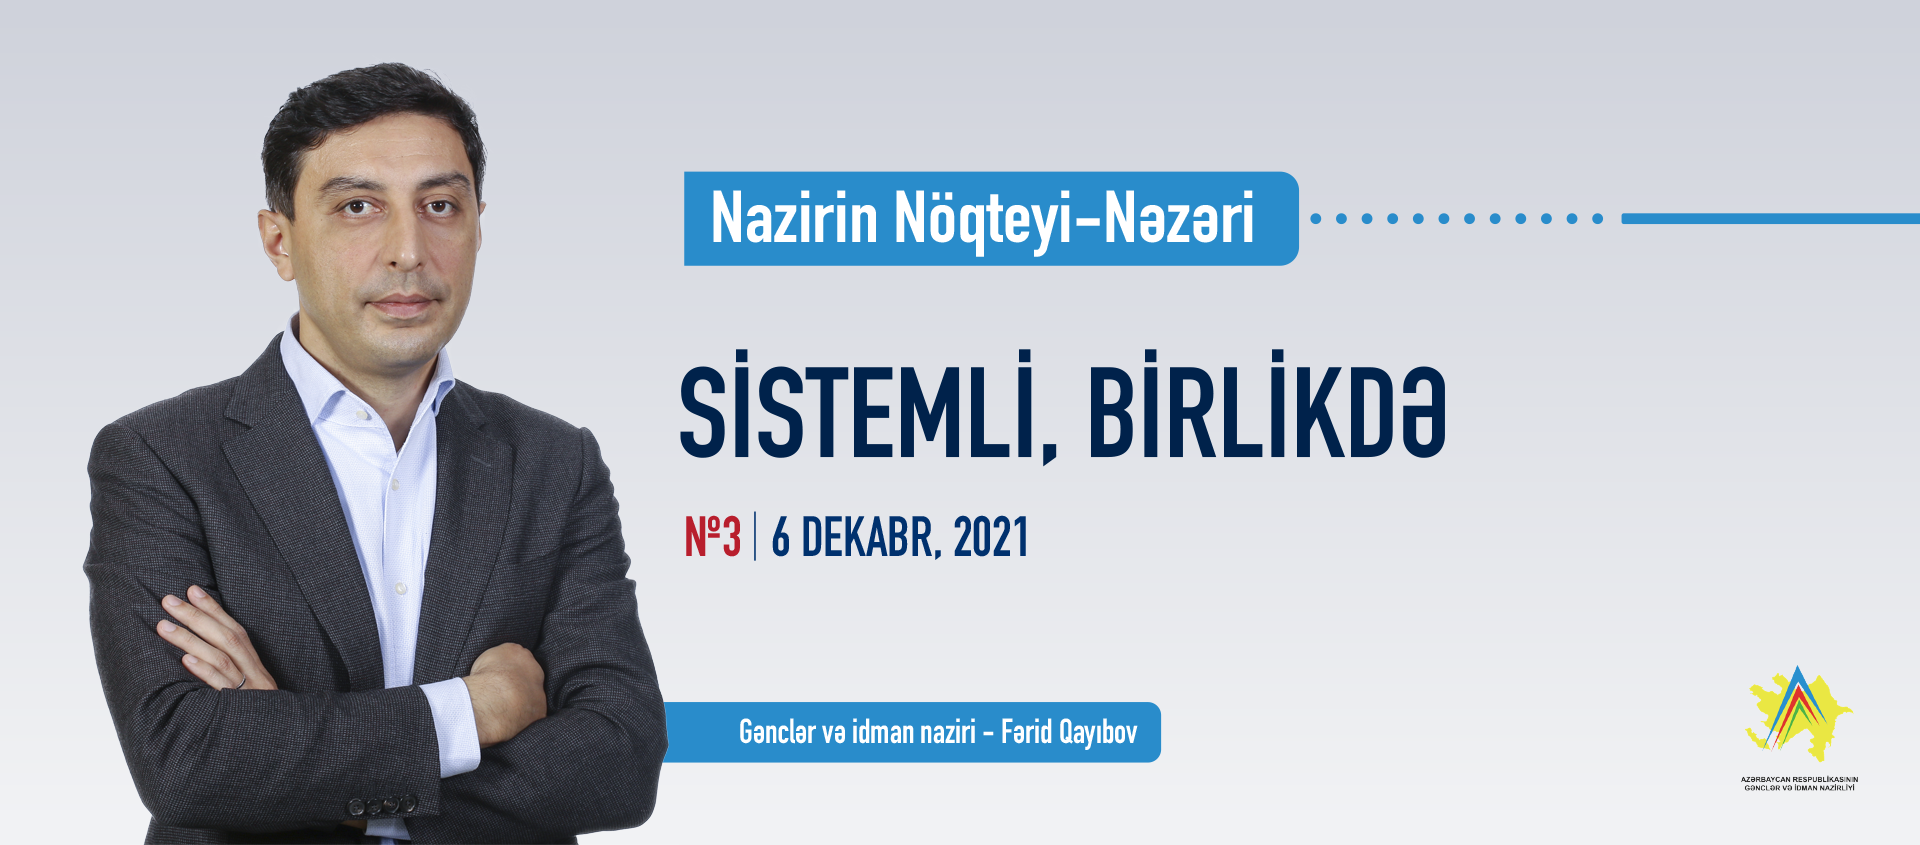 Nazir Fərid Qayıbov: "Sistemli, birlikdə çalışacağıq"